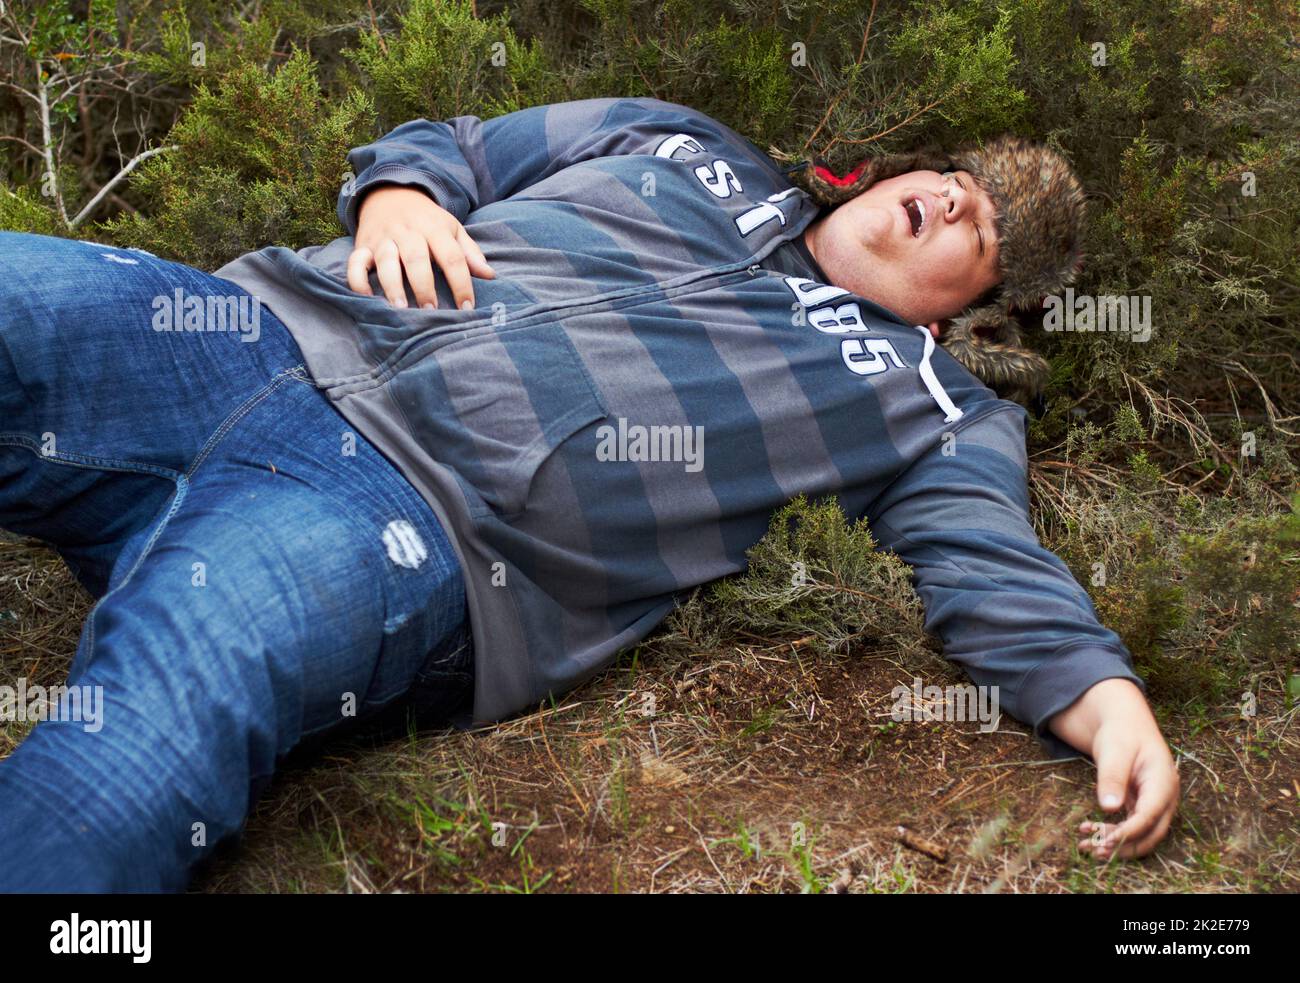 Die Folgen einer wilden Nacht zu erleiden Ein übergewichtiger junger Mann, der draußen im Gebüsch ohnmächtig liegt. Stockfoto